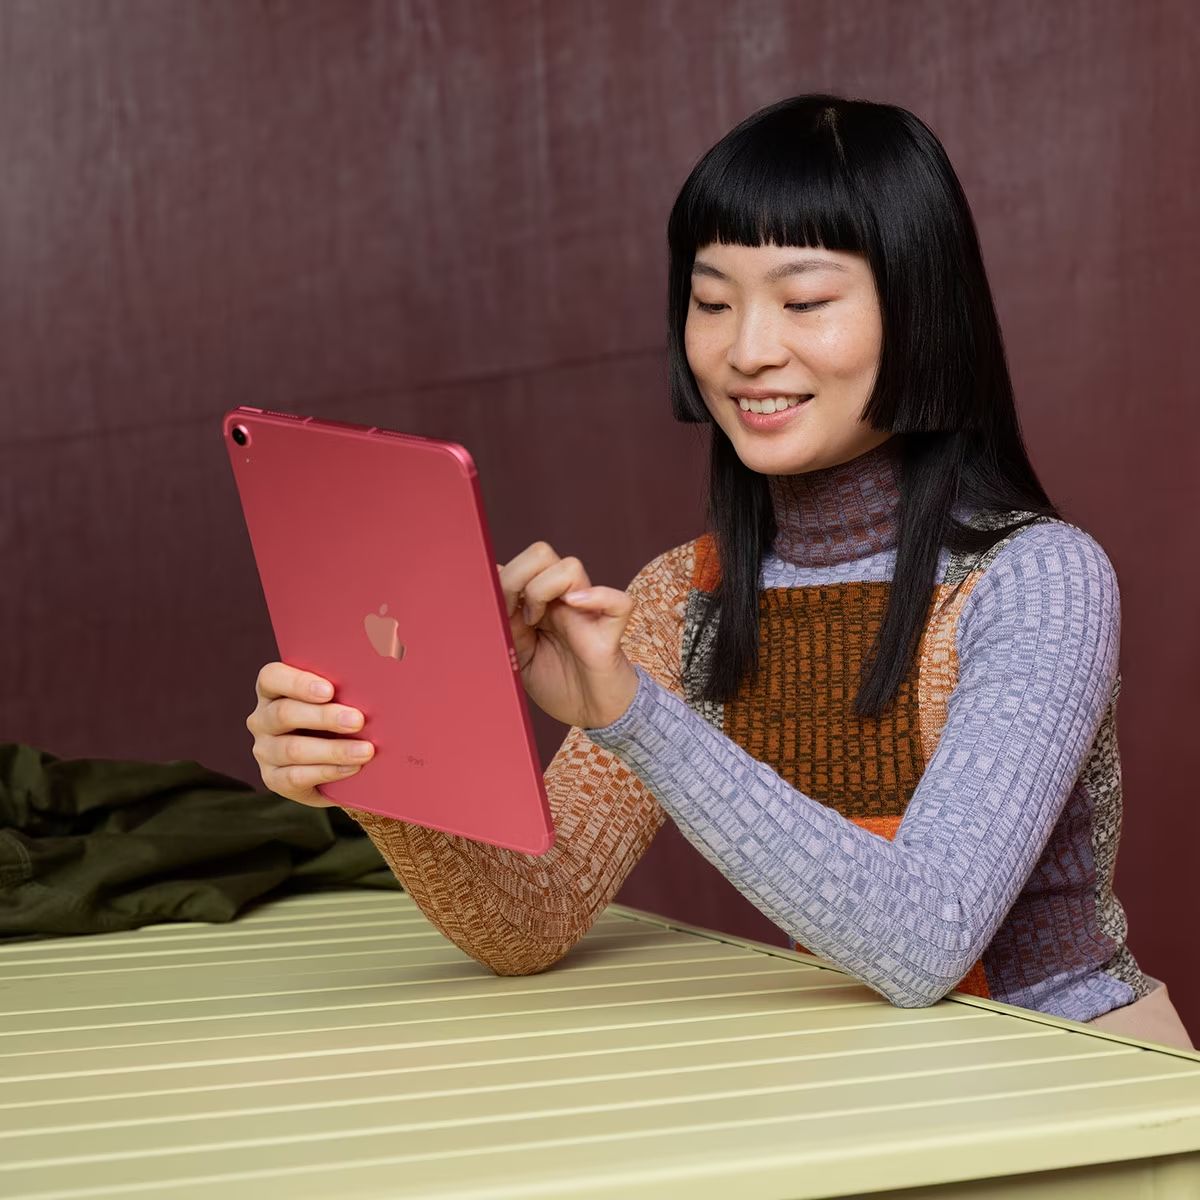 El Corte Inglés rebaja el iPad de Apple casi un 25%, una ocasión irrechazable